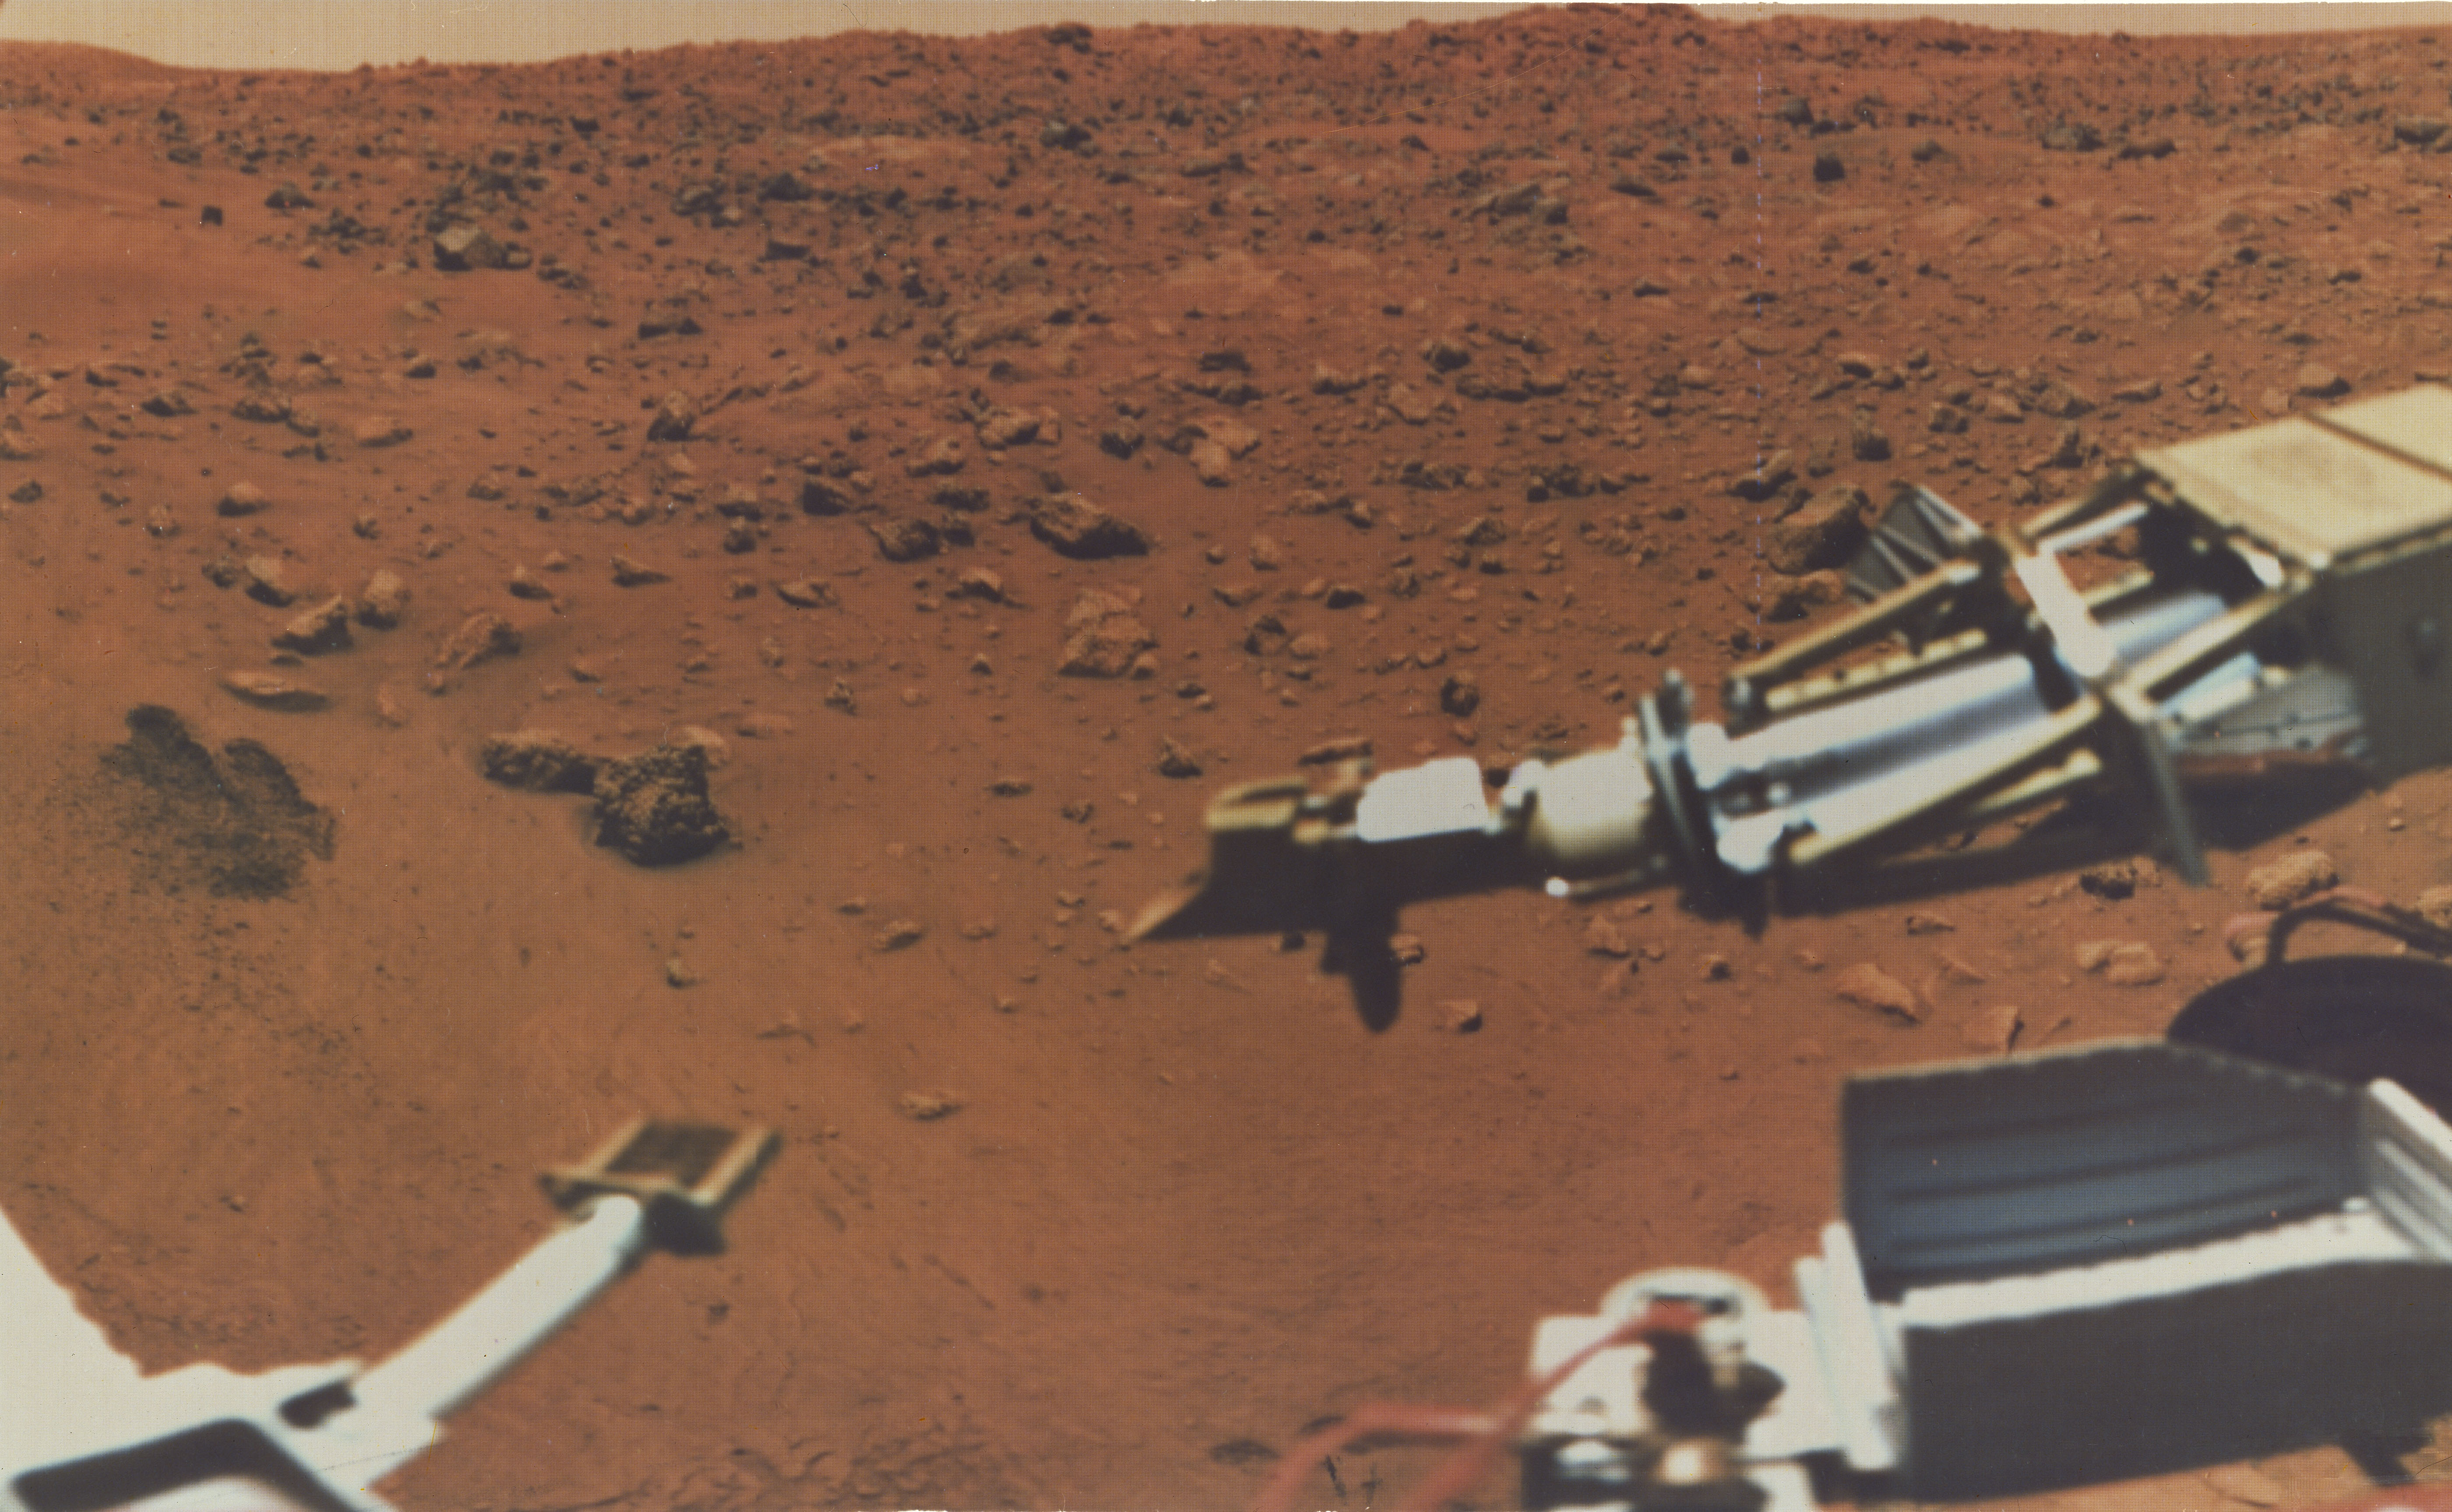 Mars Viking Lander Program